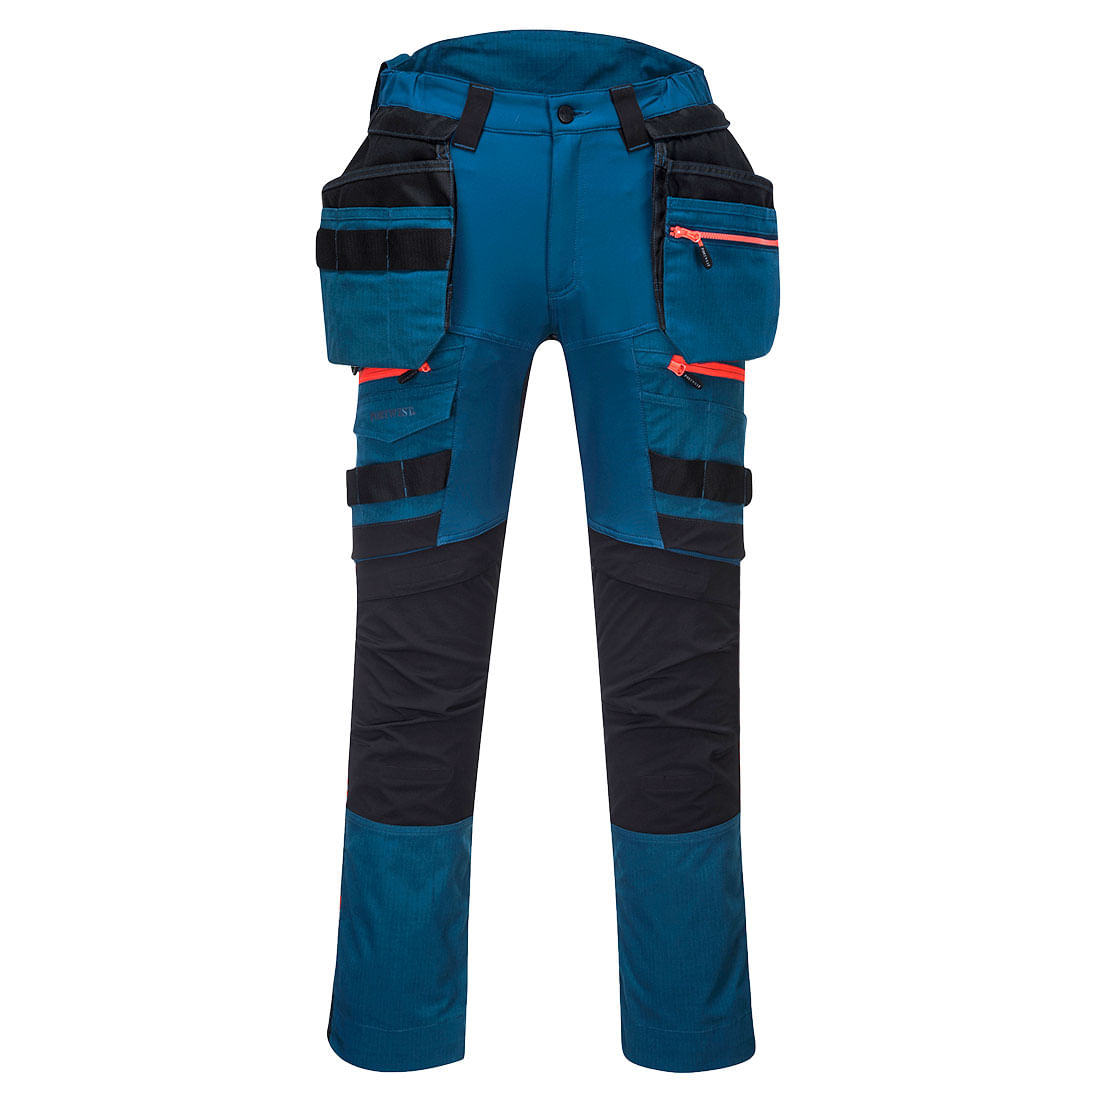 Pantaloni de protectie negru/albastru Portwest DX3 Marime 32 dacris.net imagine 2022 depozituldepapetarie.ro